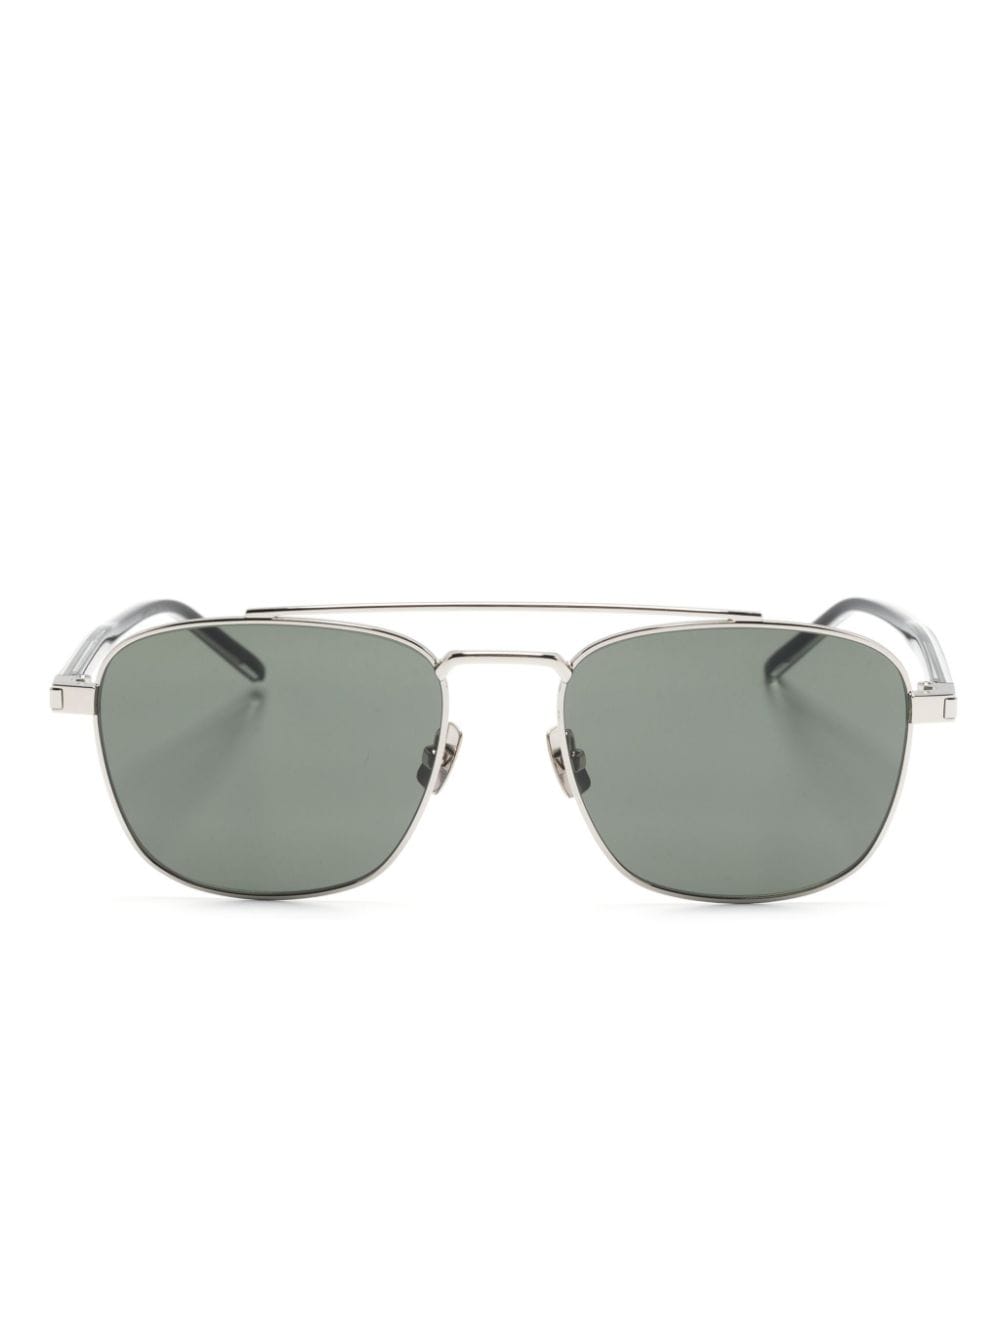 Saint Laurent Eyewear Sonnenbrille mit Metallgestell - Gold von Saint Laurent Eyewear